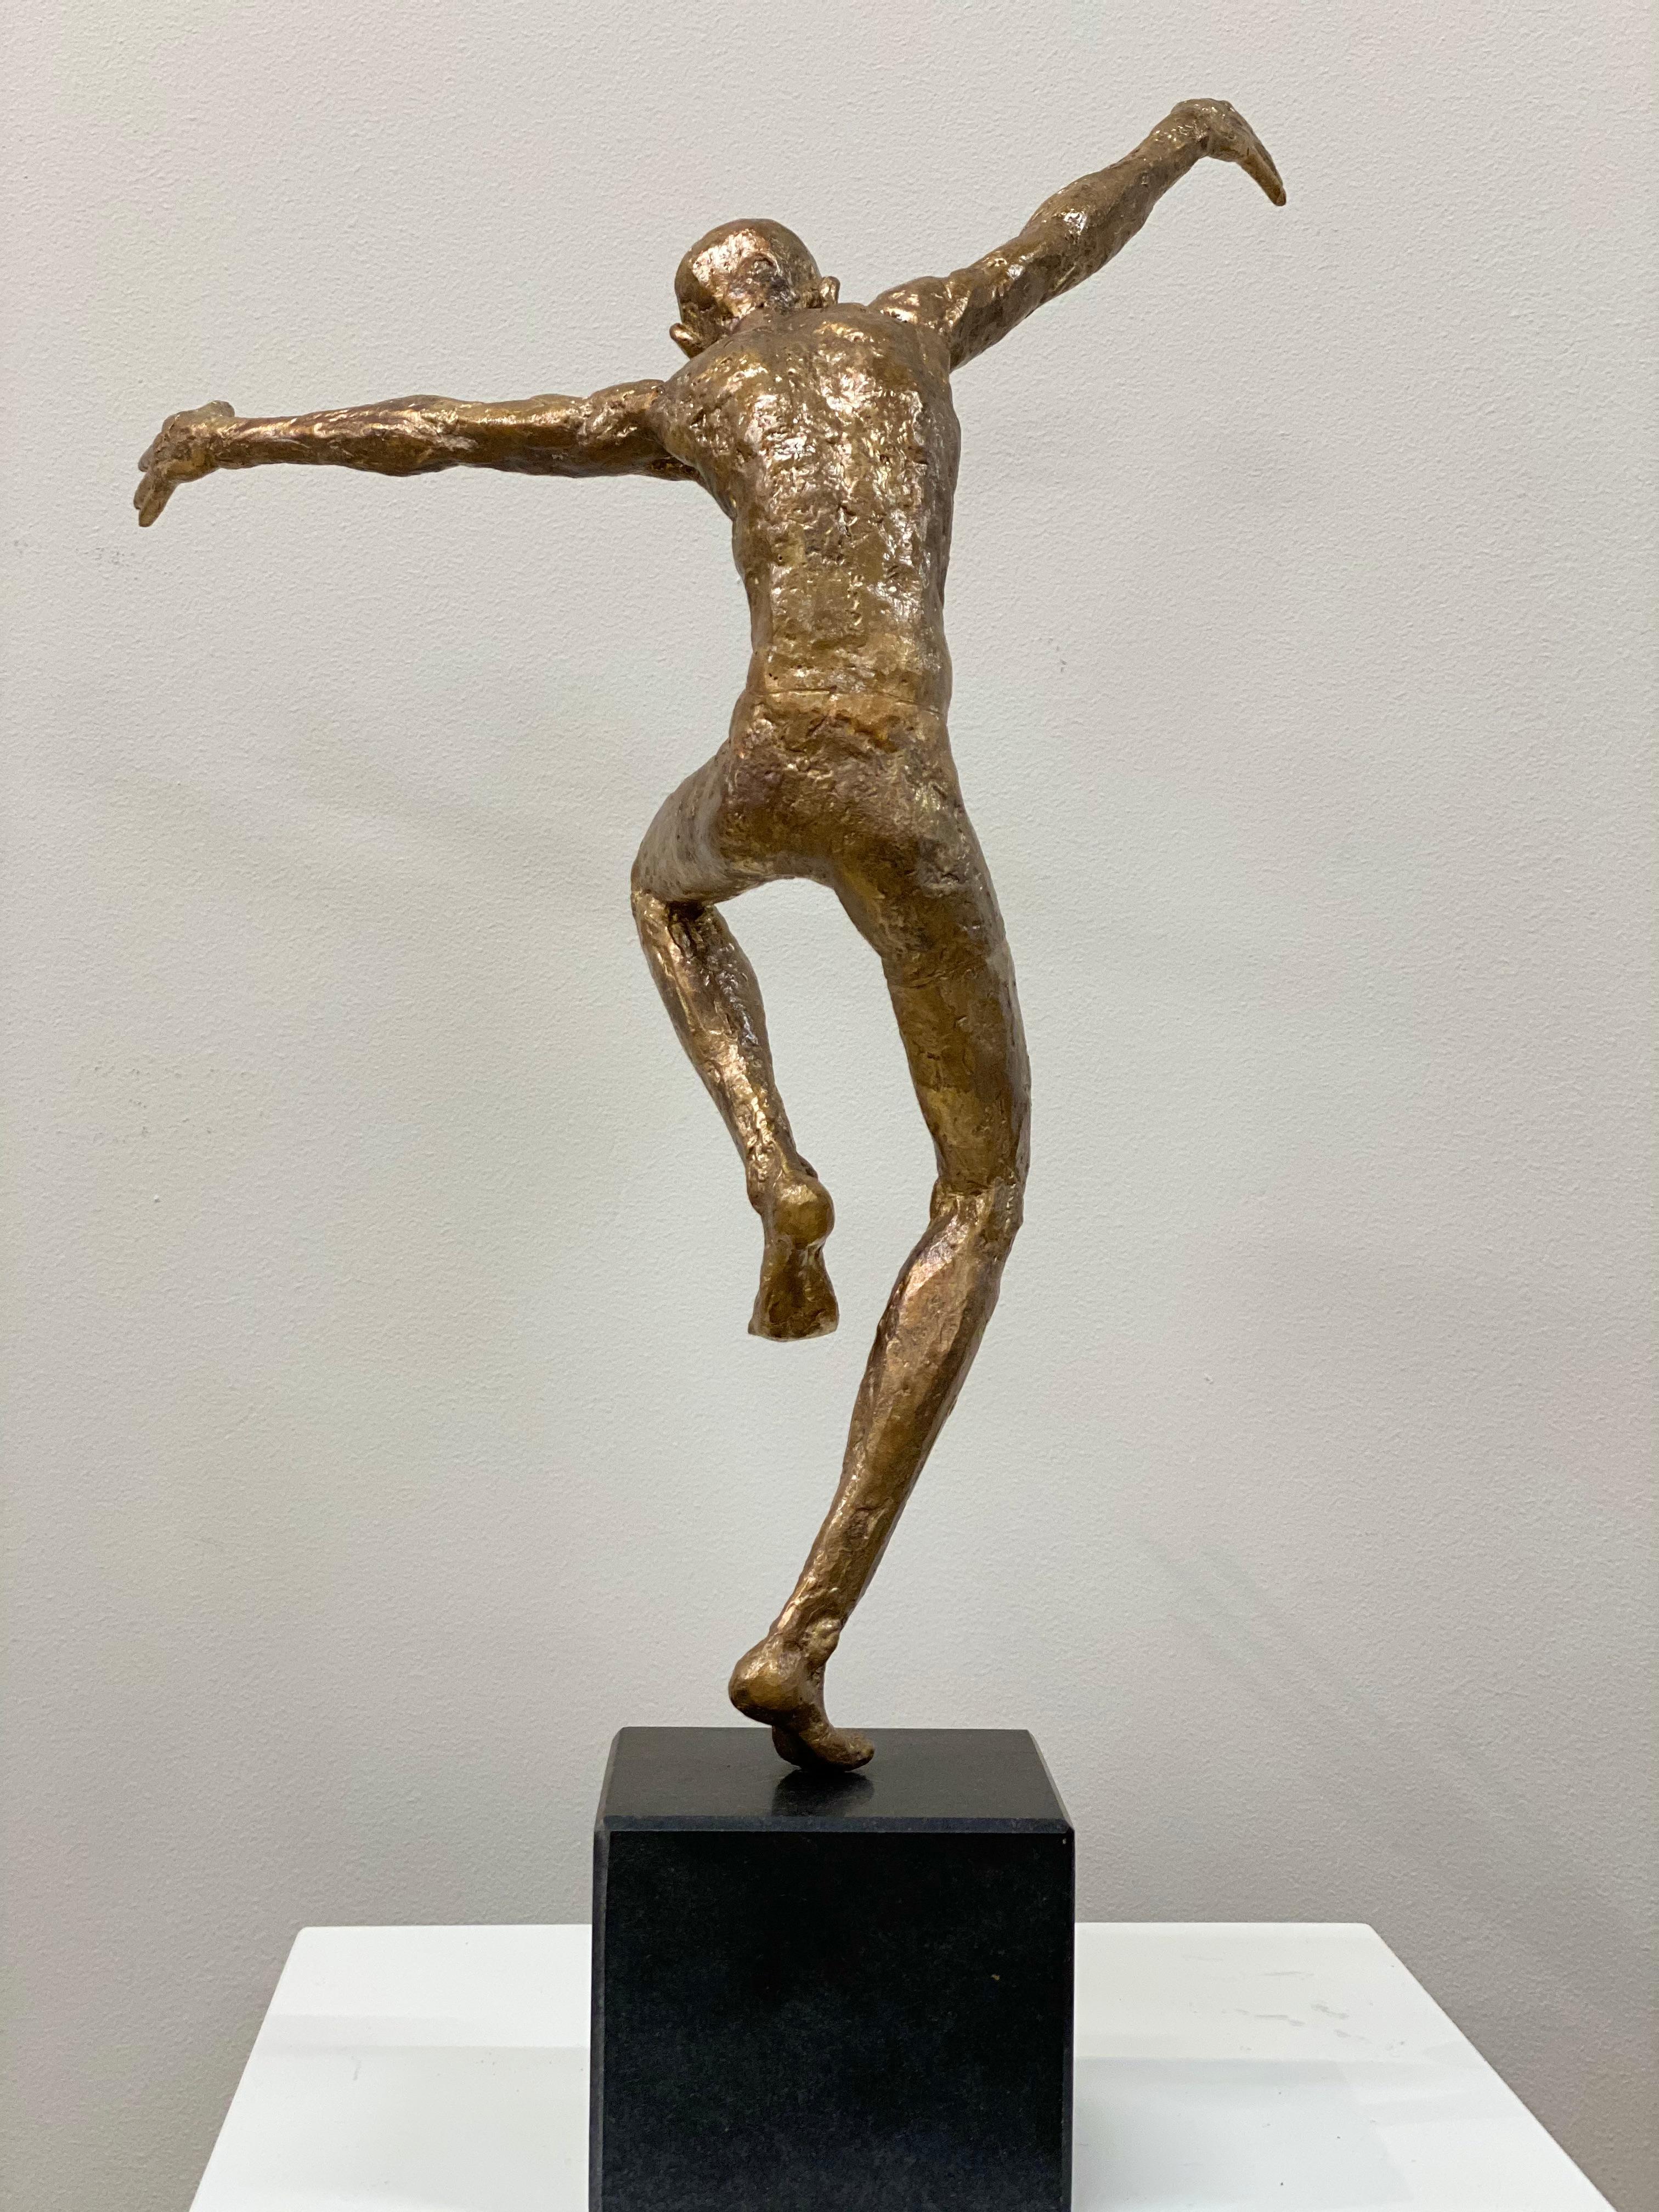 Cette sculpture est réalisée en bronze, par l'artiste néerlandais Martijn Soontiens.   La sculpture repose sur une base en pierre naturelle. 

Ses sculptures masculines dansantes ont pour thème le déplacement et le mouvement. 

L'artiste Martijn